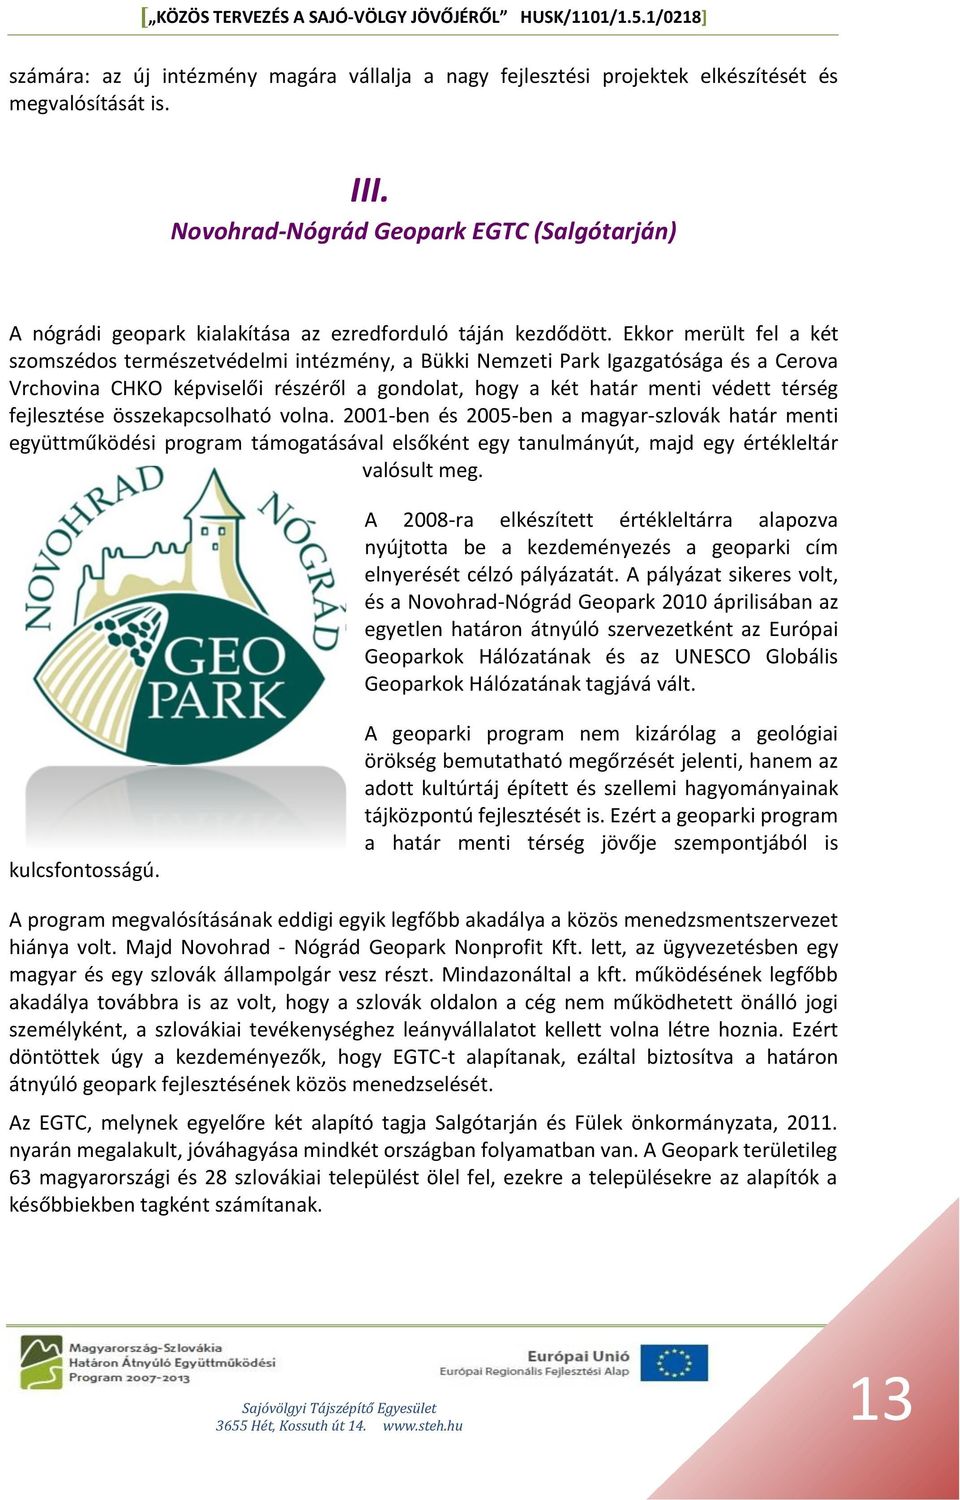 Ekkor merült fel a két szomszédos természetvédelmi intézmény, a Bükki Nemzeti Park Igazgatósága és a Cerova Vrchovina CHKO képviselői részéről a gondolat, hogy a két határ menti védett térség